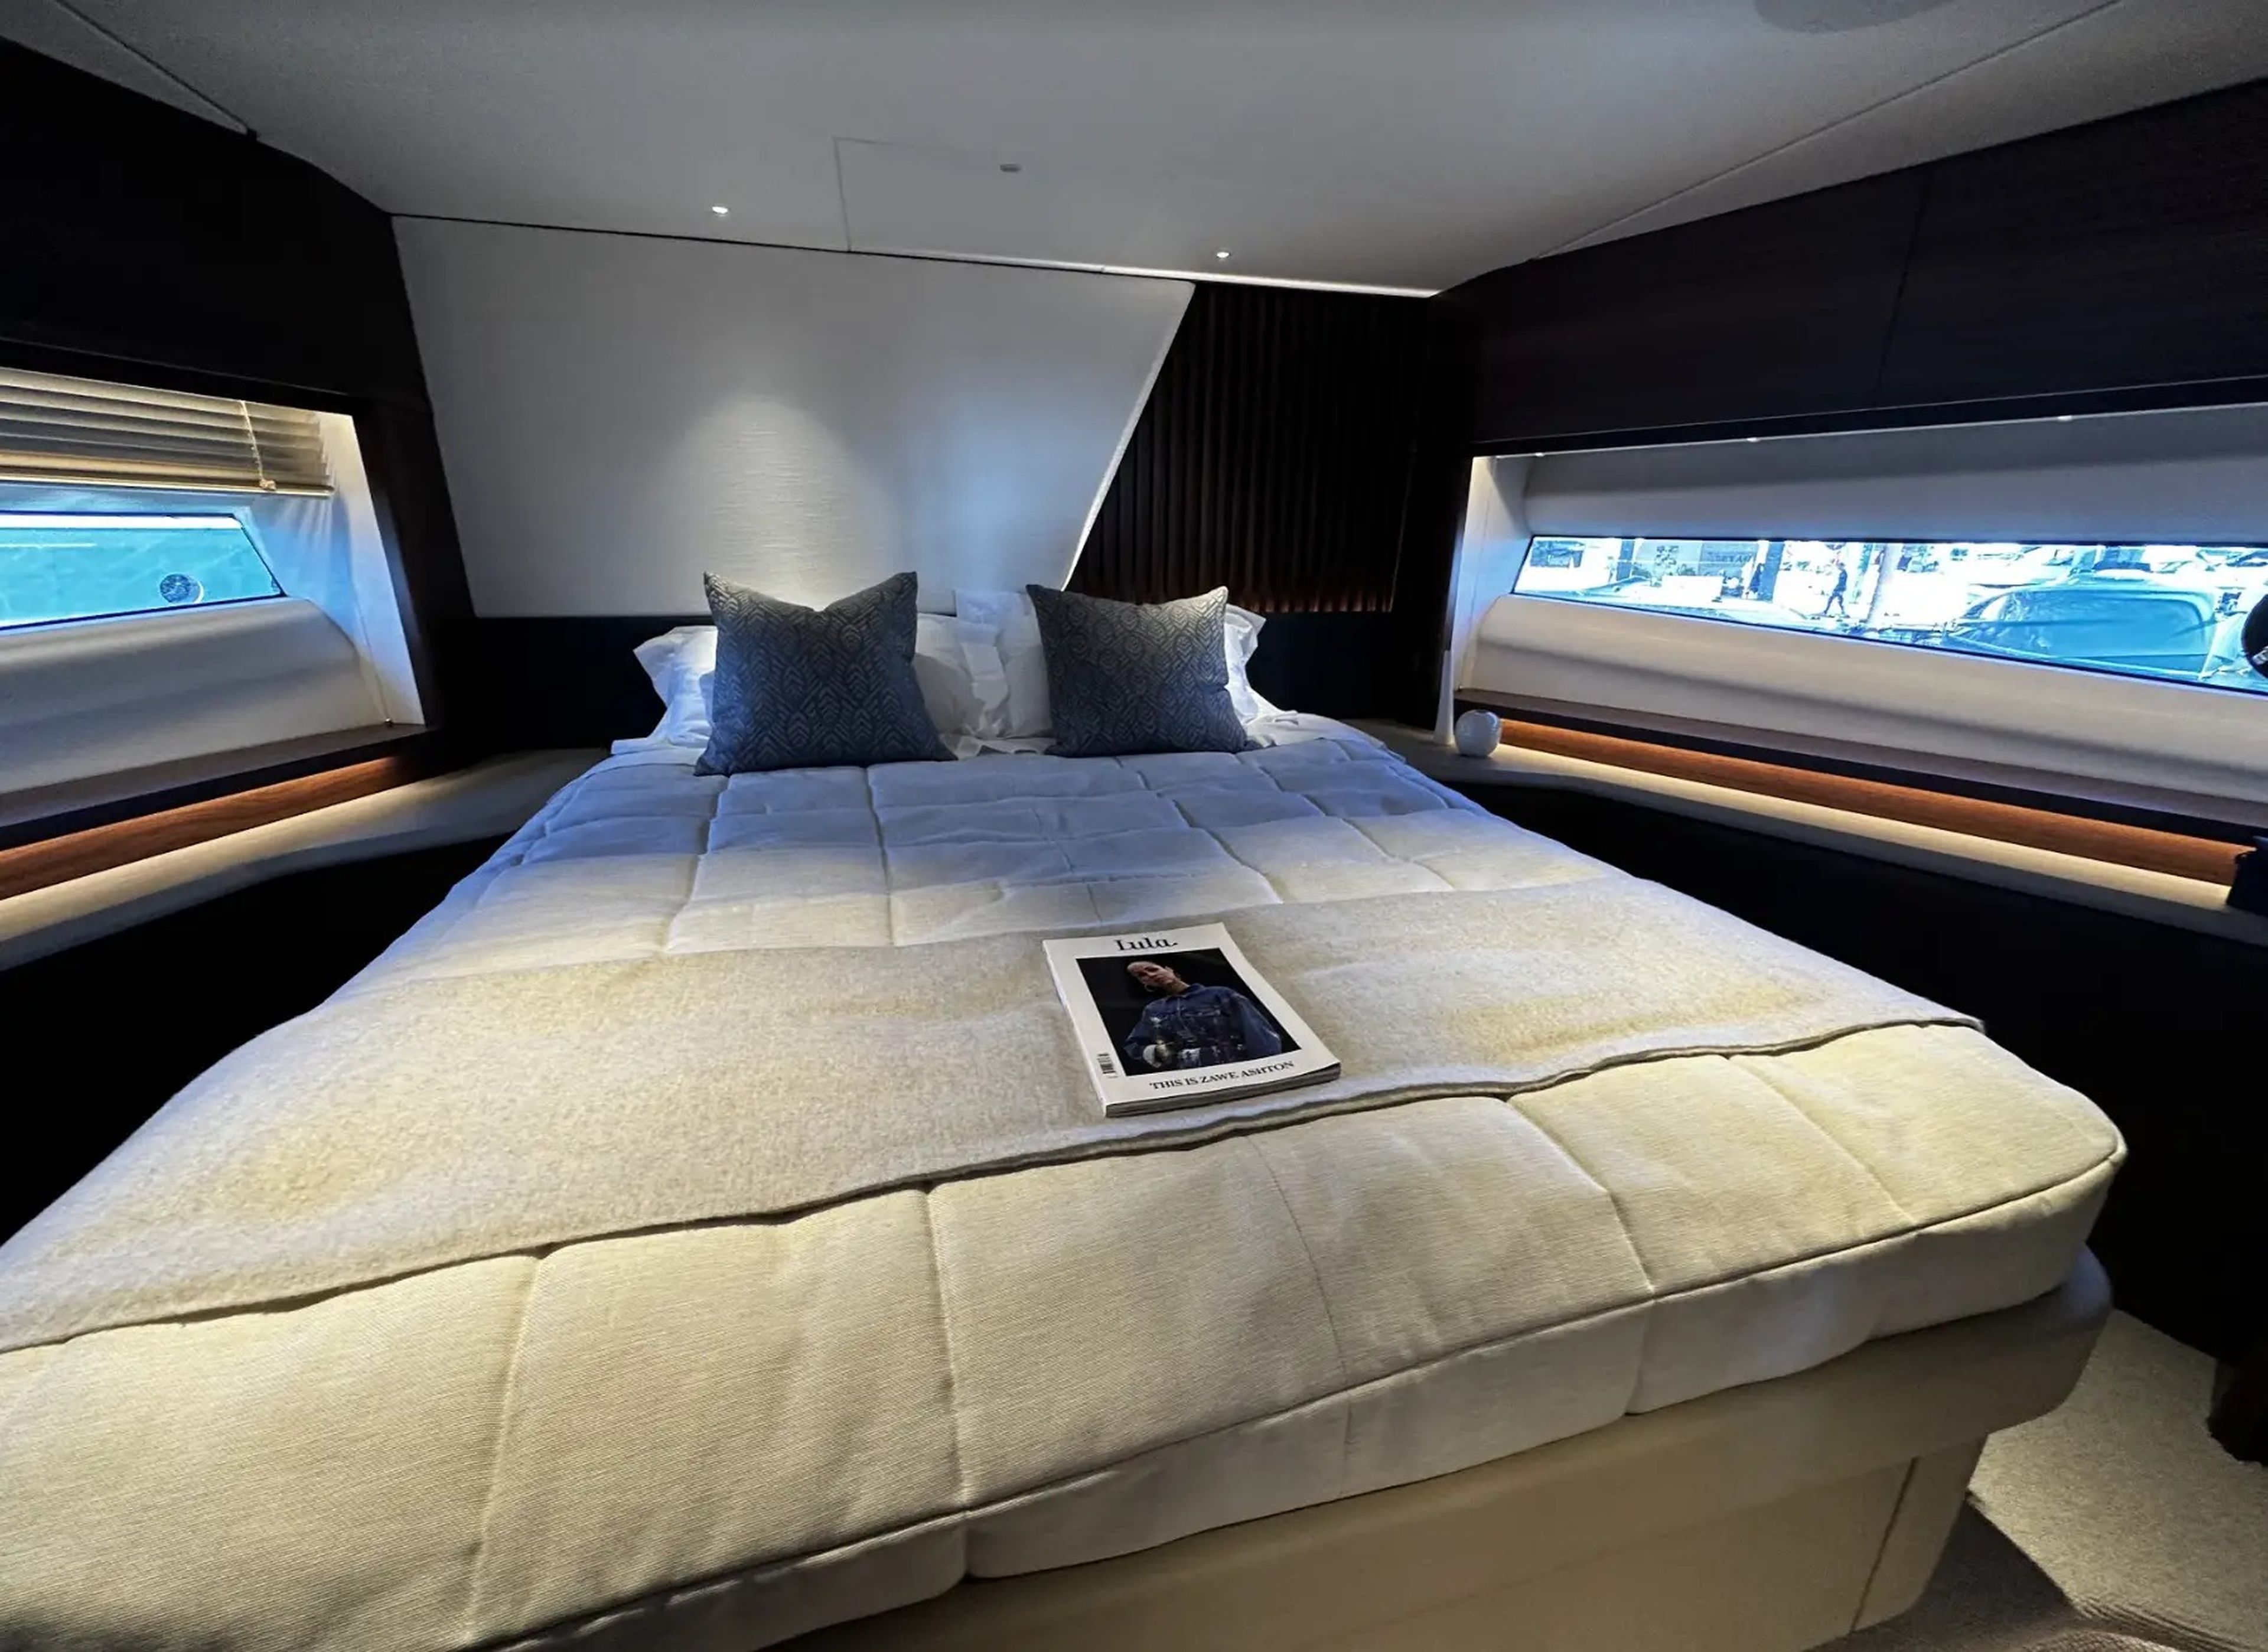 El otro dormitorio con cama doble, que cuenta con un colchón de tamaño king.